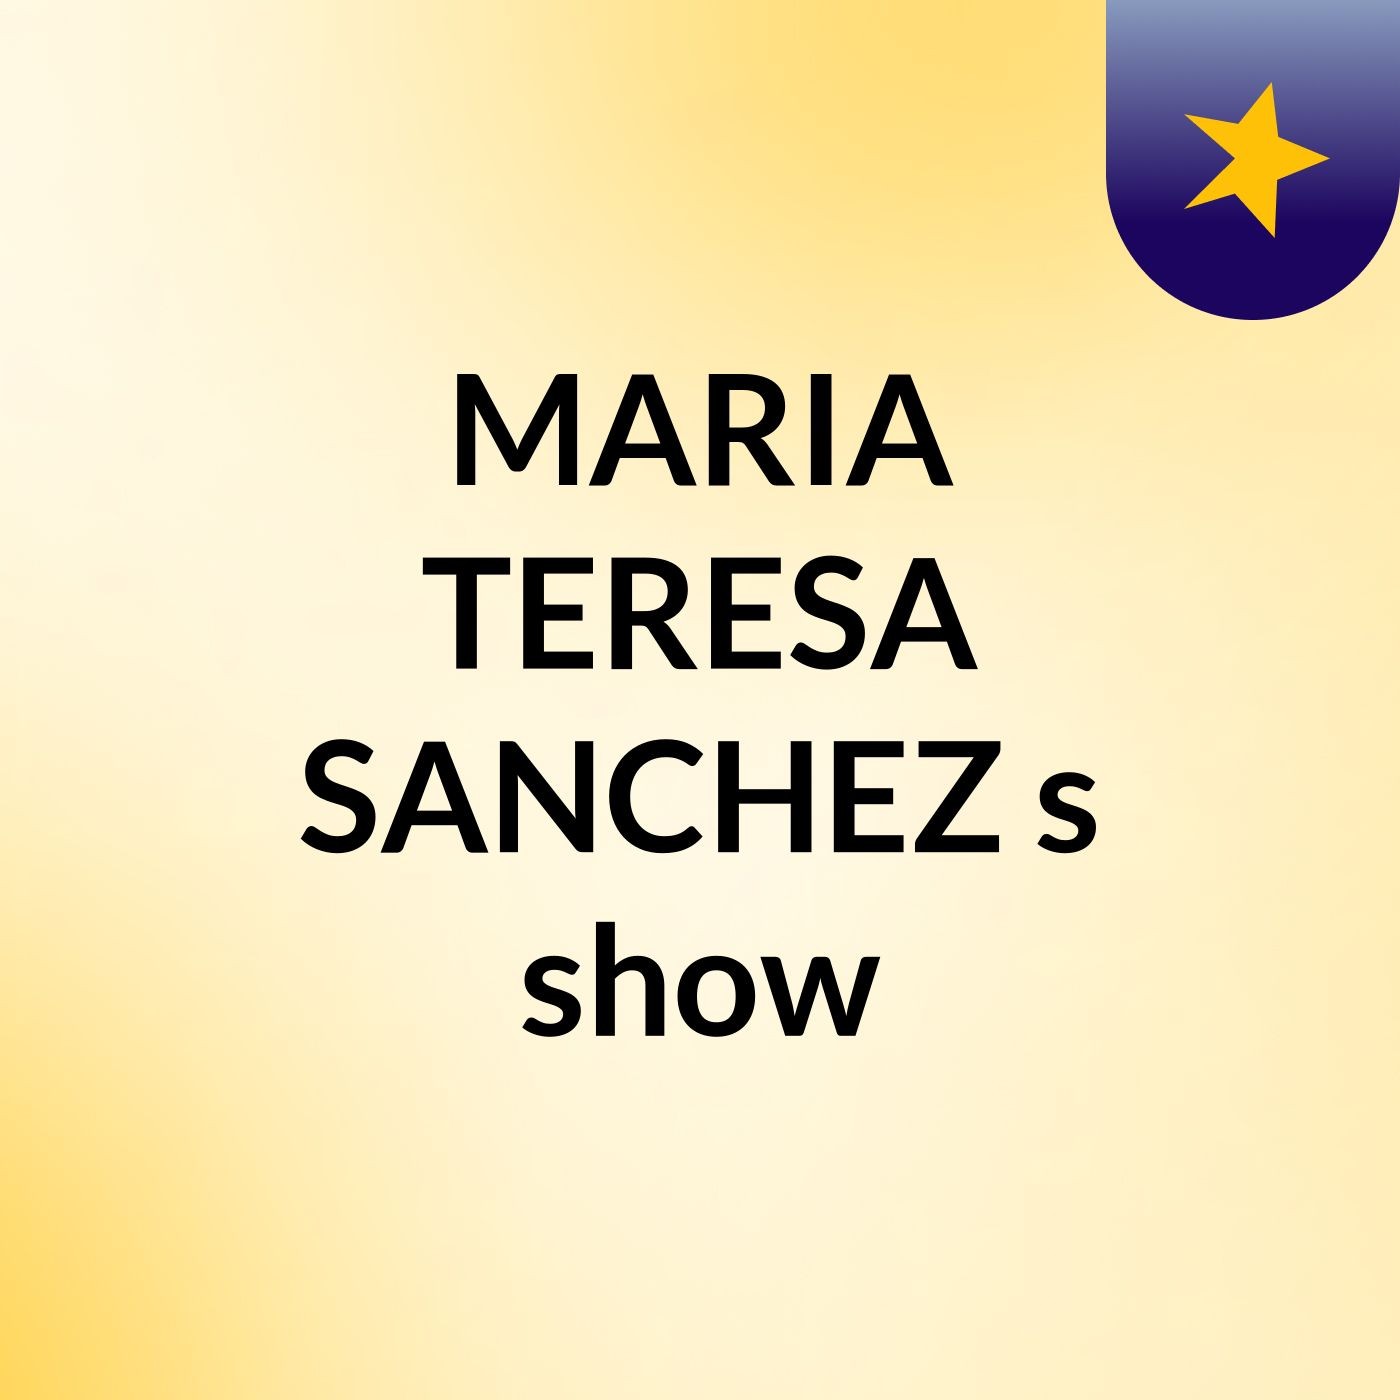 MARIA TERESA SANCHEZ's show